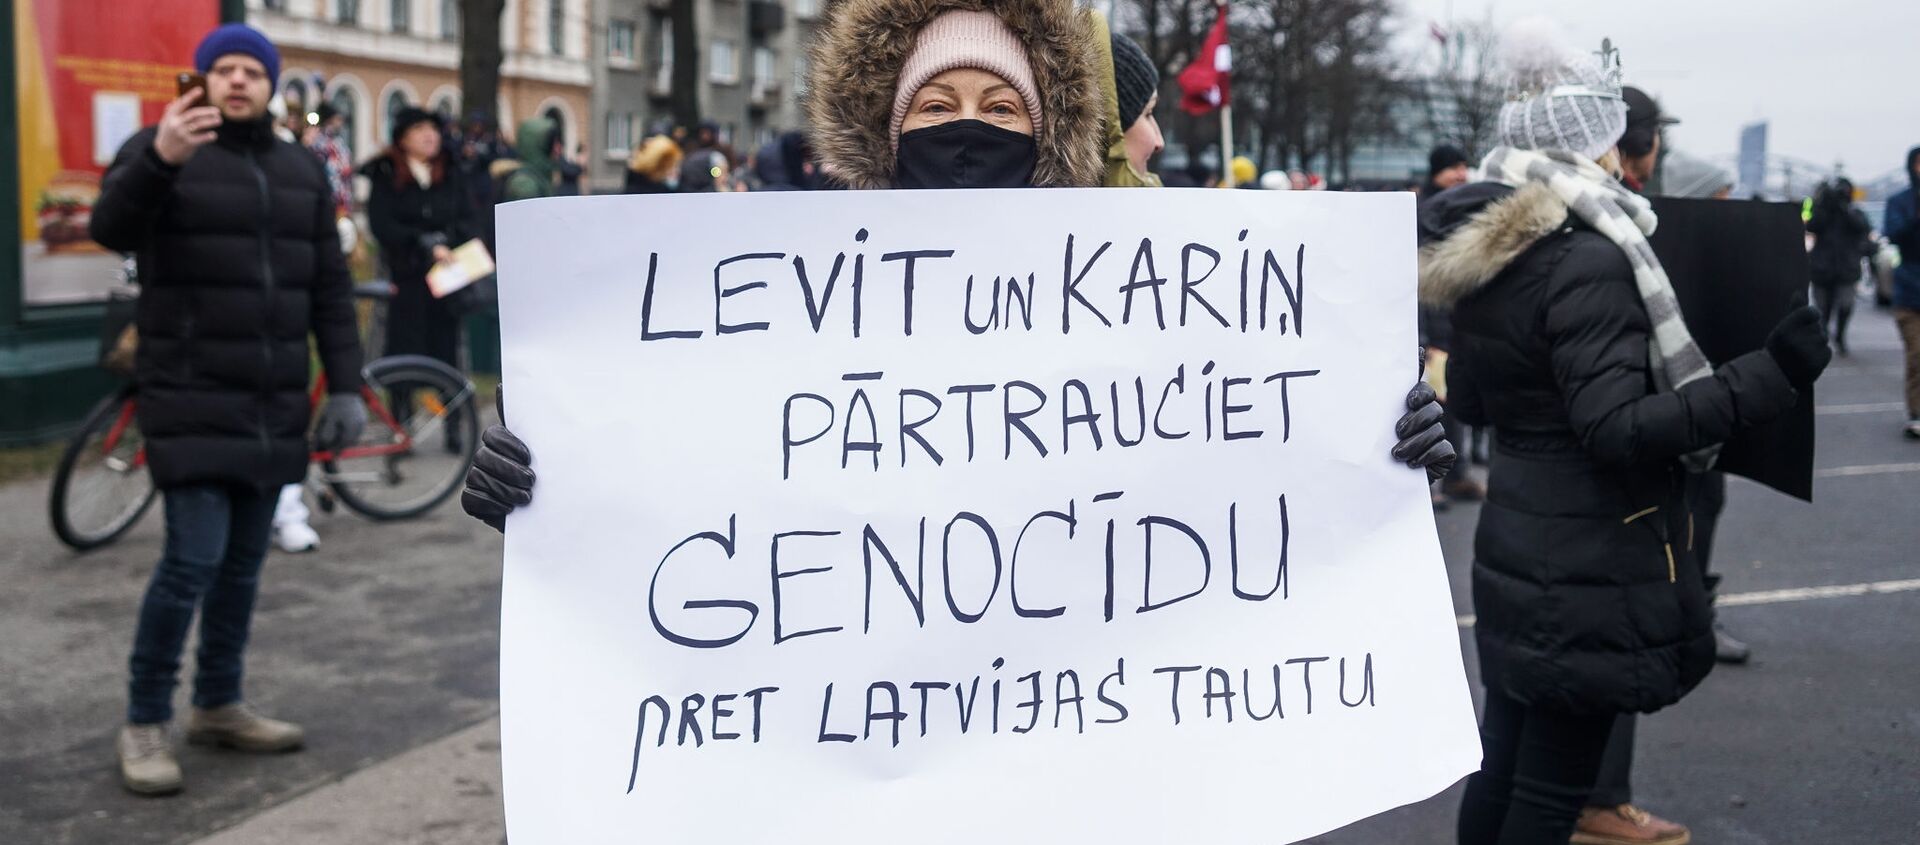 Акция протеста на набережной 11 Ноября в Риге.  - Sputnik Latvija, 1920, 14.12.2020